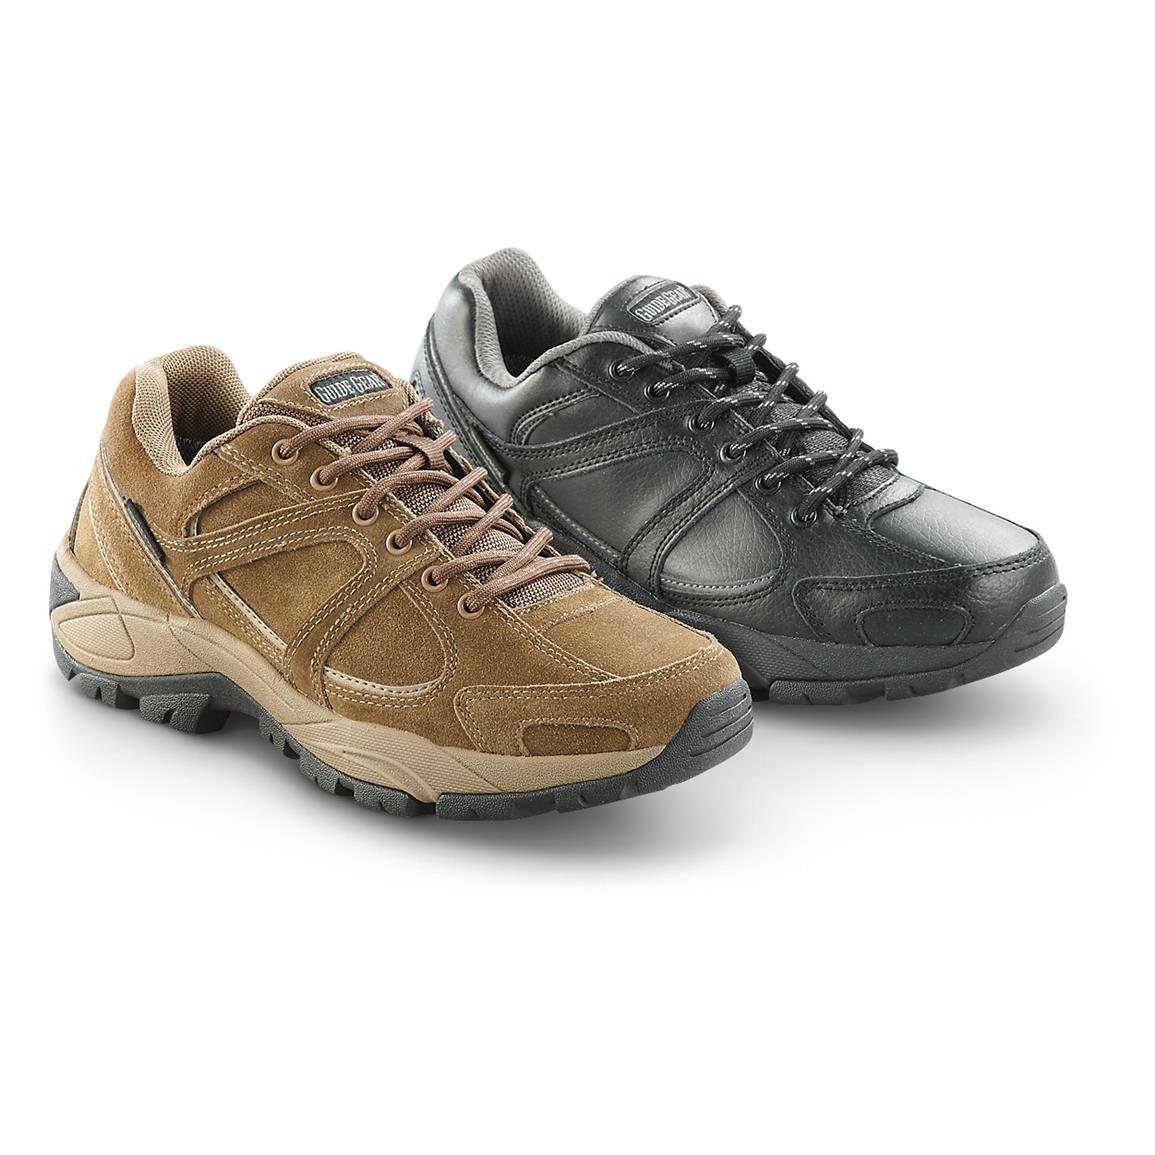 Men's Guide Gear Waterproof Trail Walker Hiking Shoes - 294041, Hiking ...